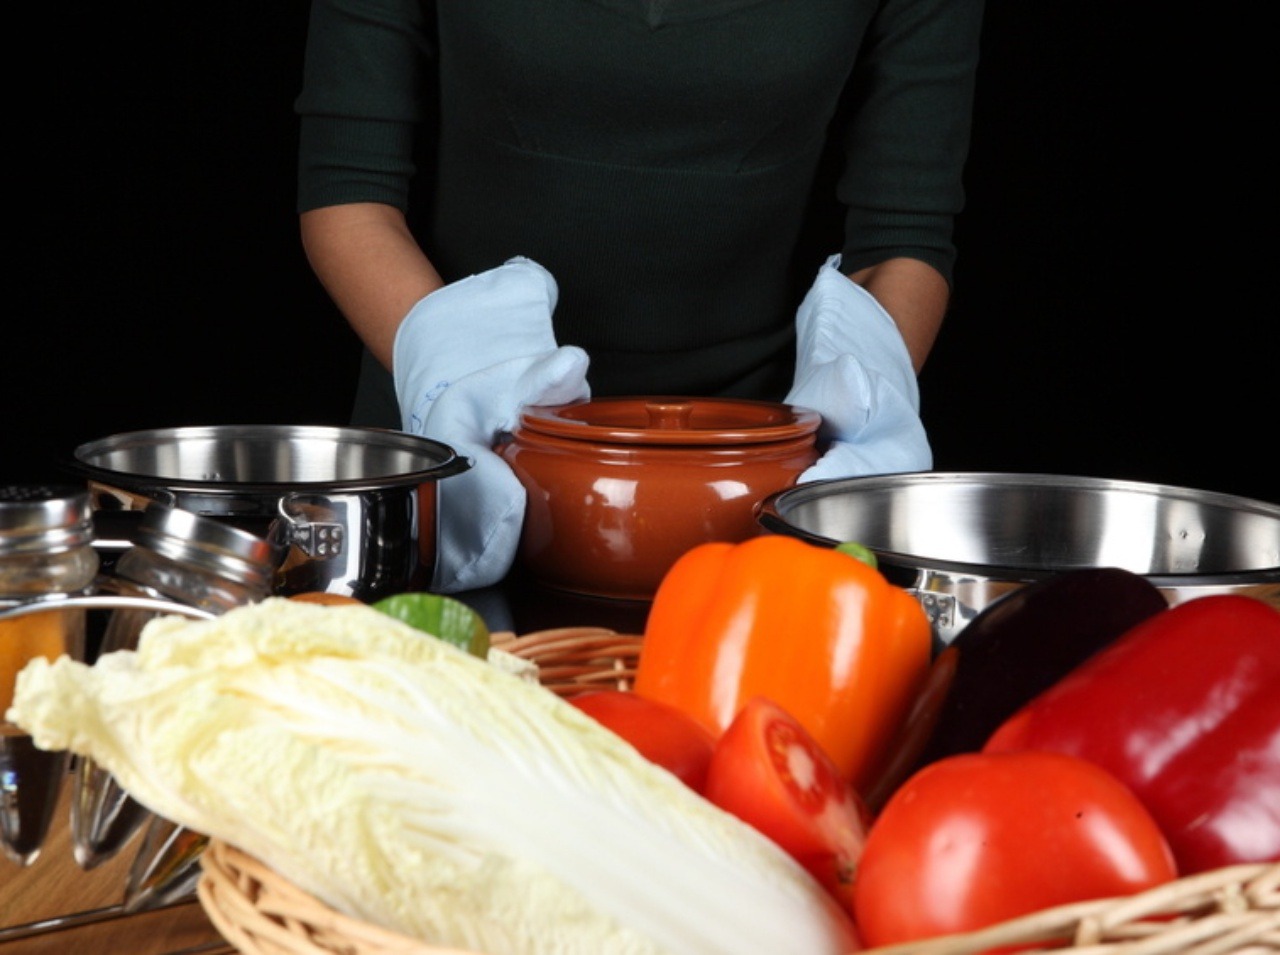 Ženy sú v kuchyni vystavené nebezpečným uhľovodíkom v kuchynskom riade a rôznych nádobách